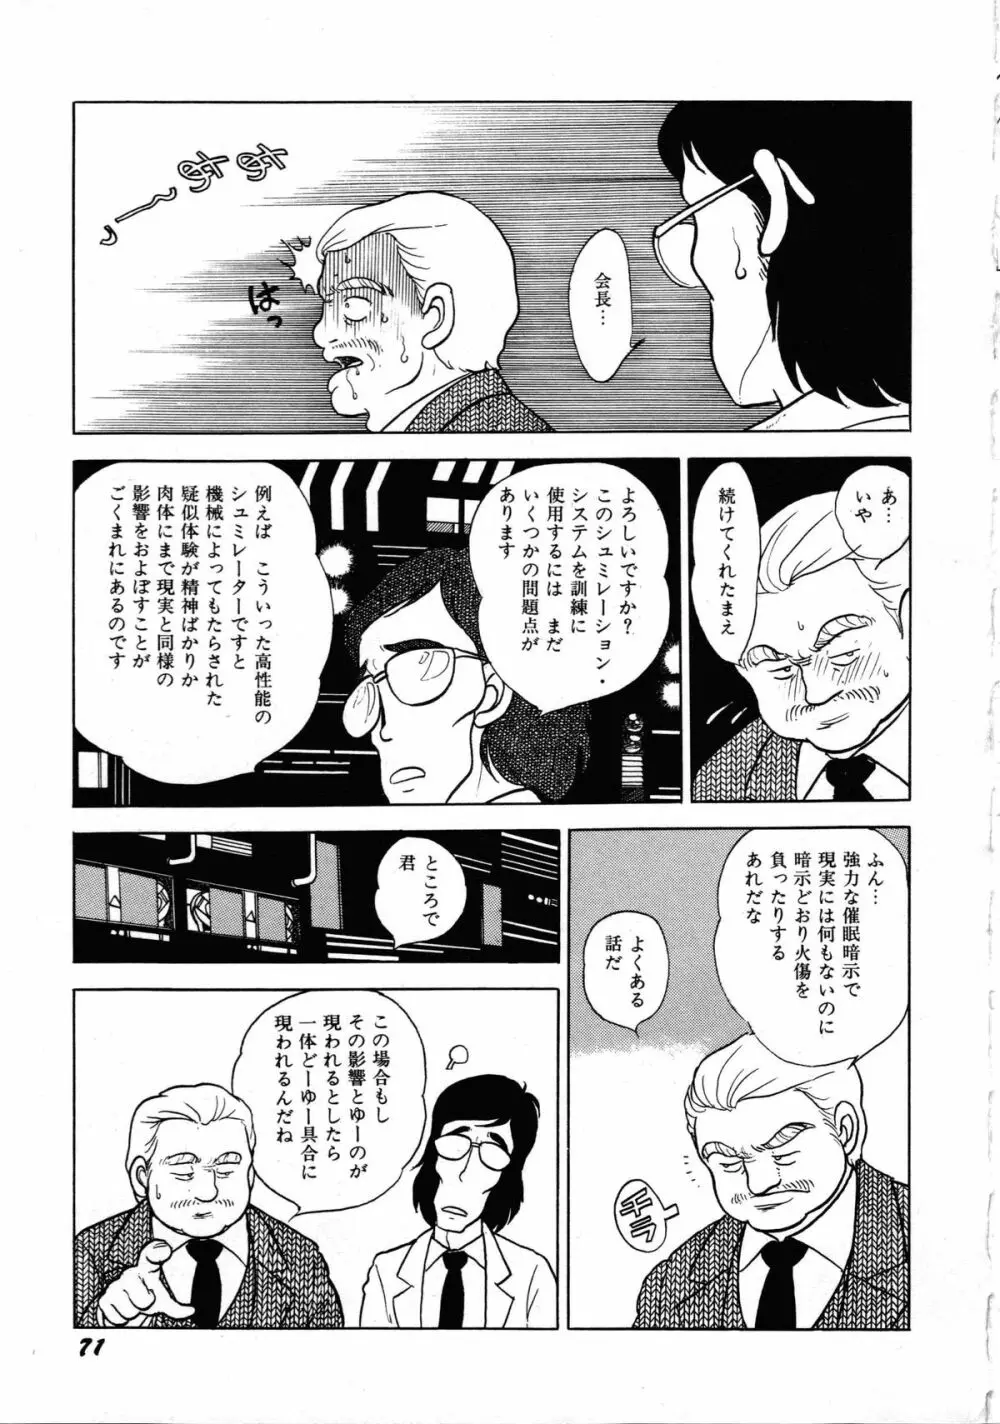 ロボット&美少女傑作選 レモン・ピープル1982-1986 75ページ